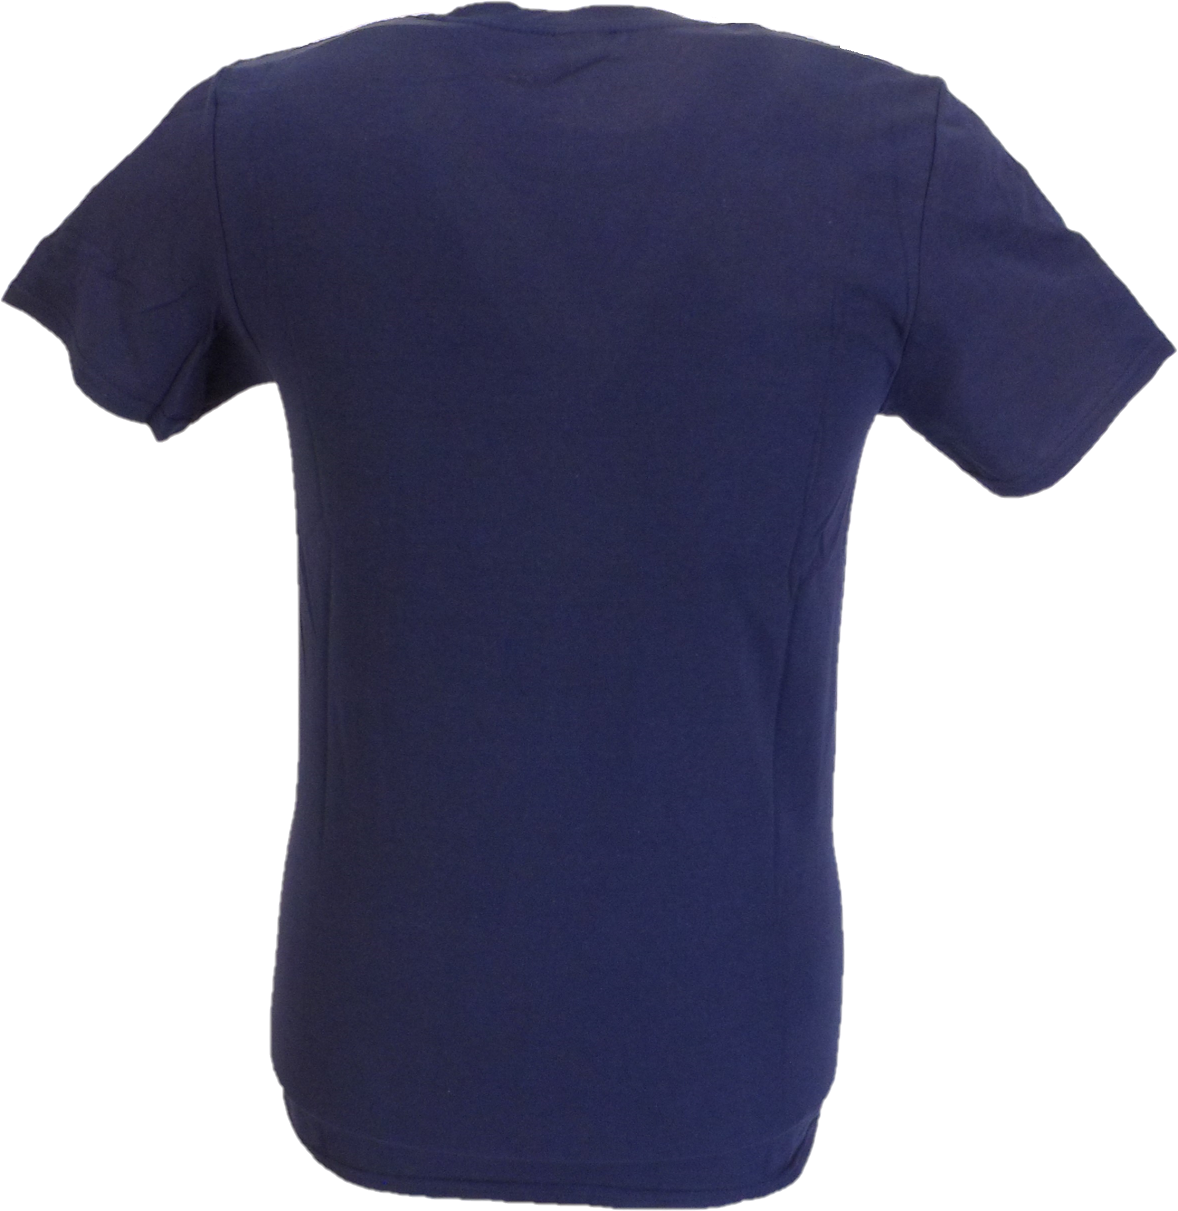 メンズ公式ライセンスOasisネイビー ブルー 長方形ターゲット ロゴ T シャツ